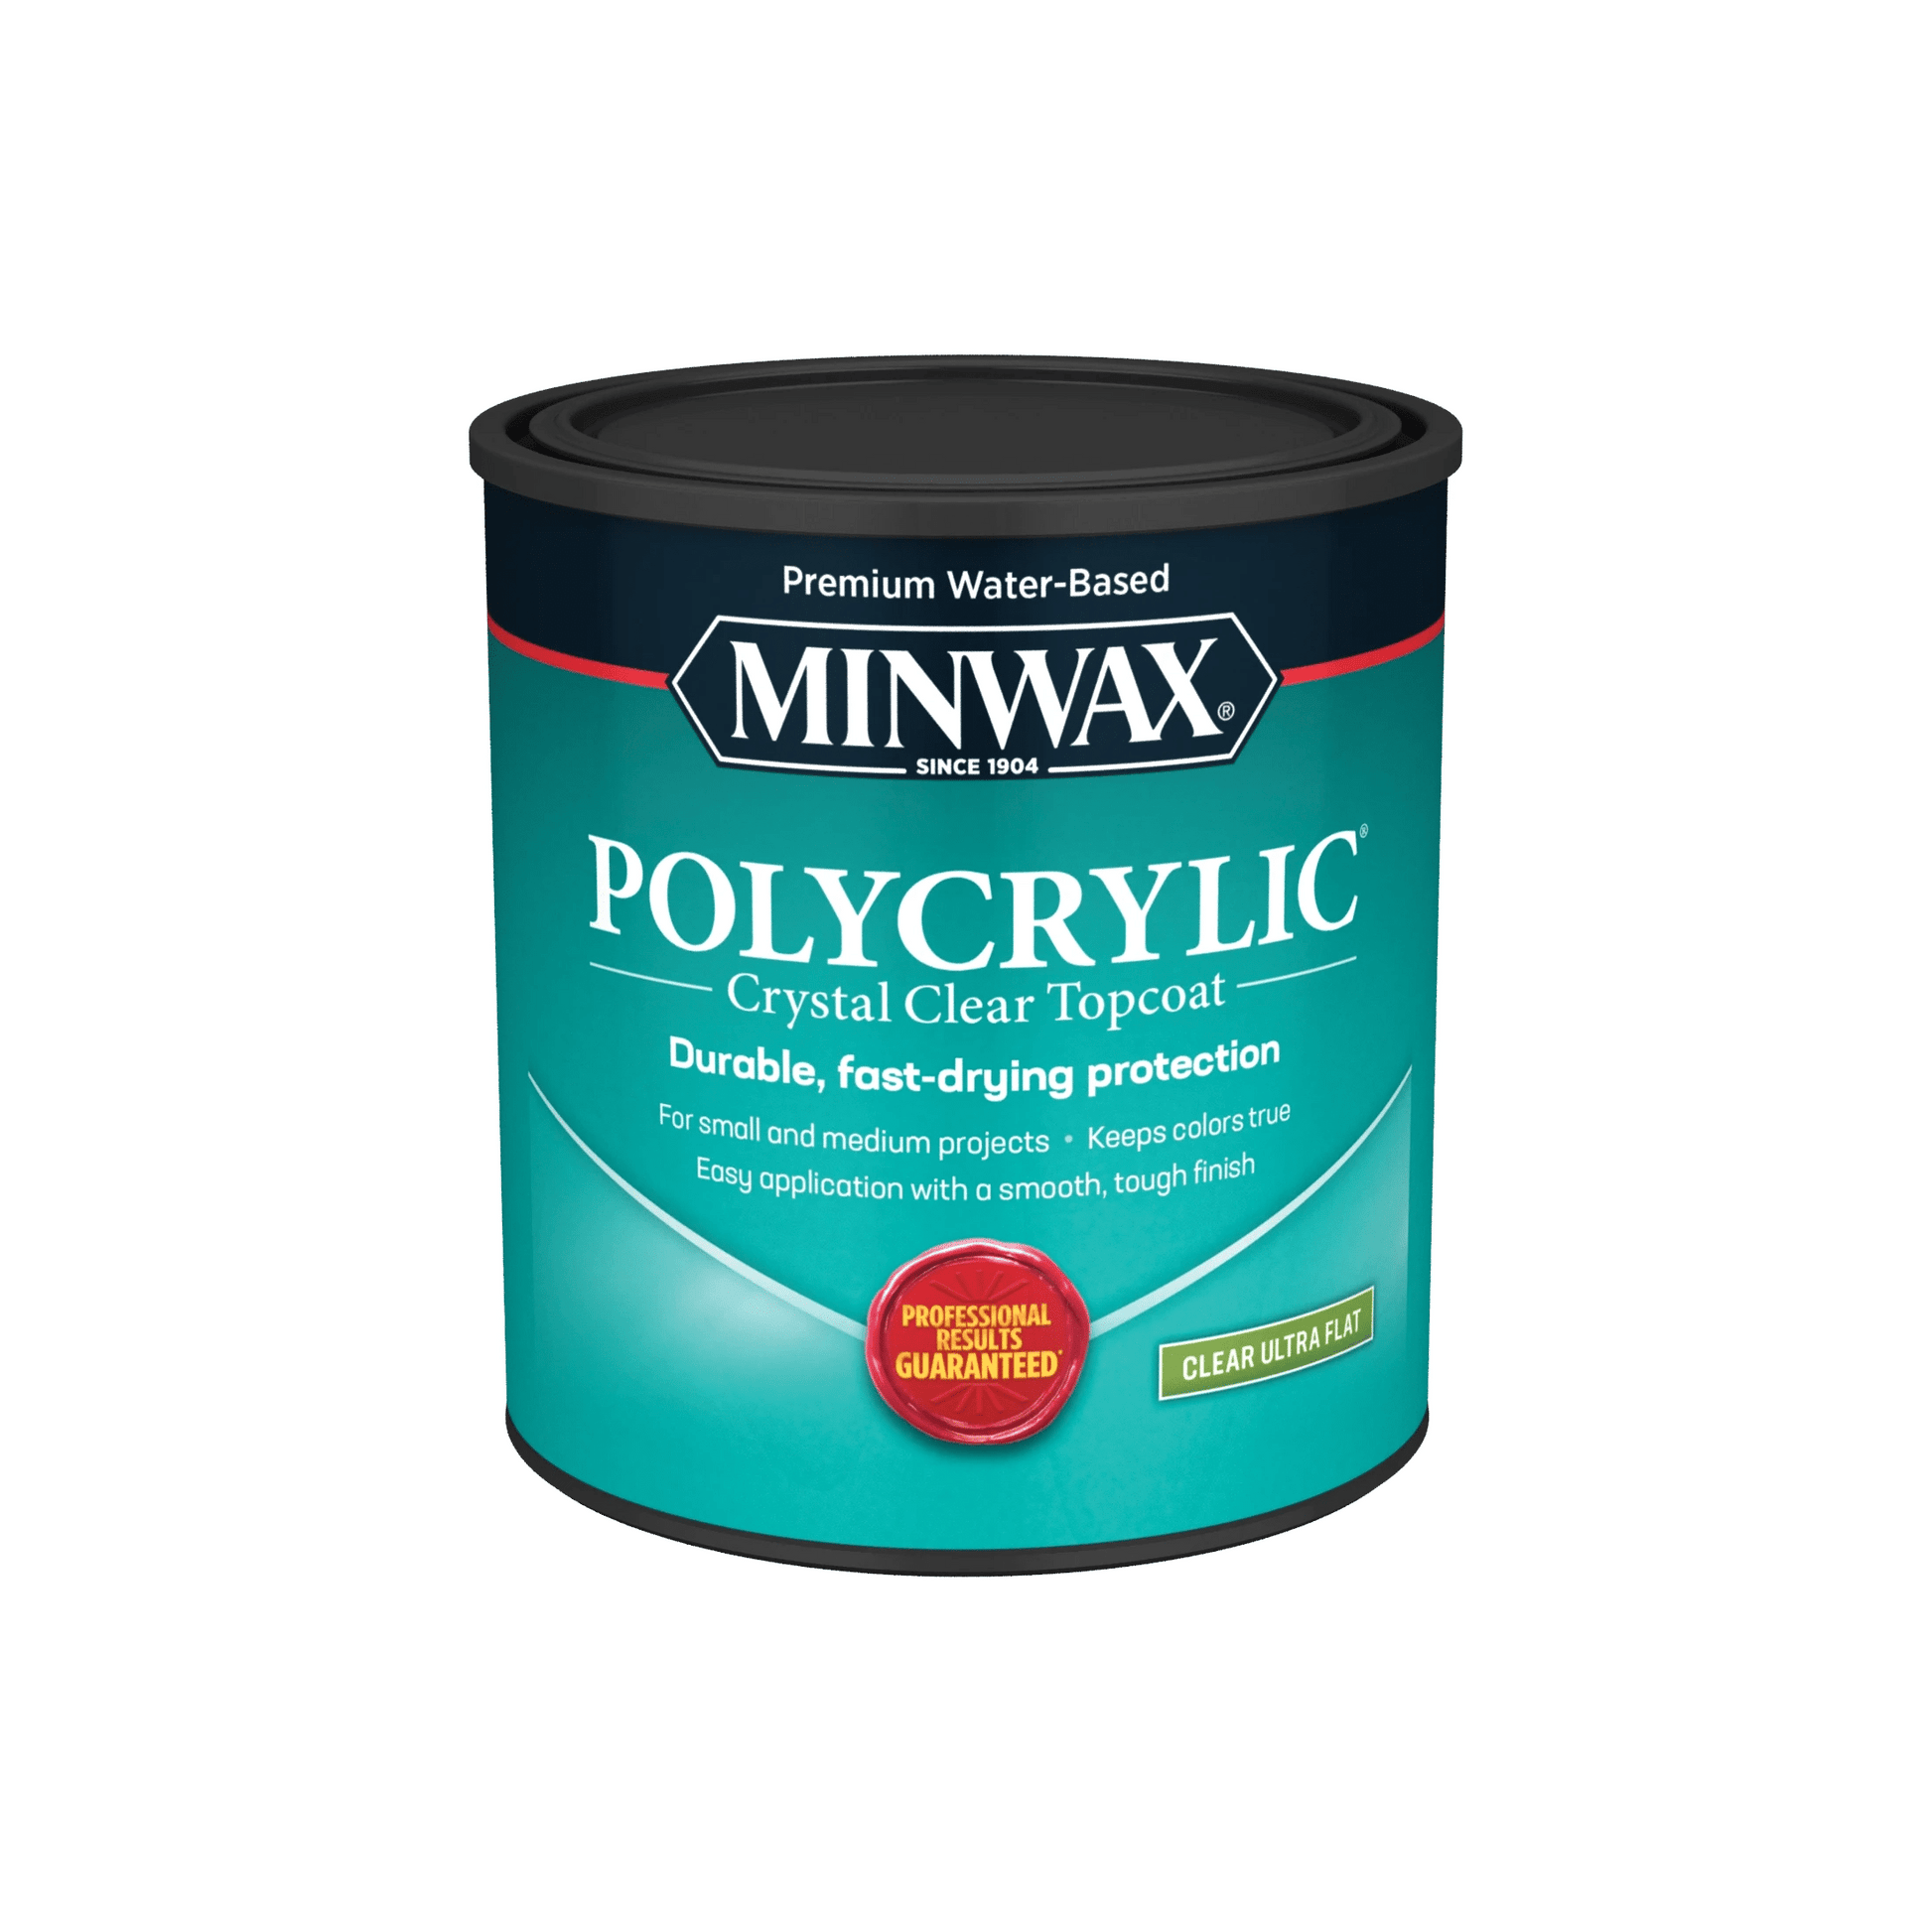 Minwax Polycrylic